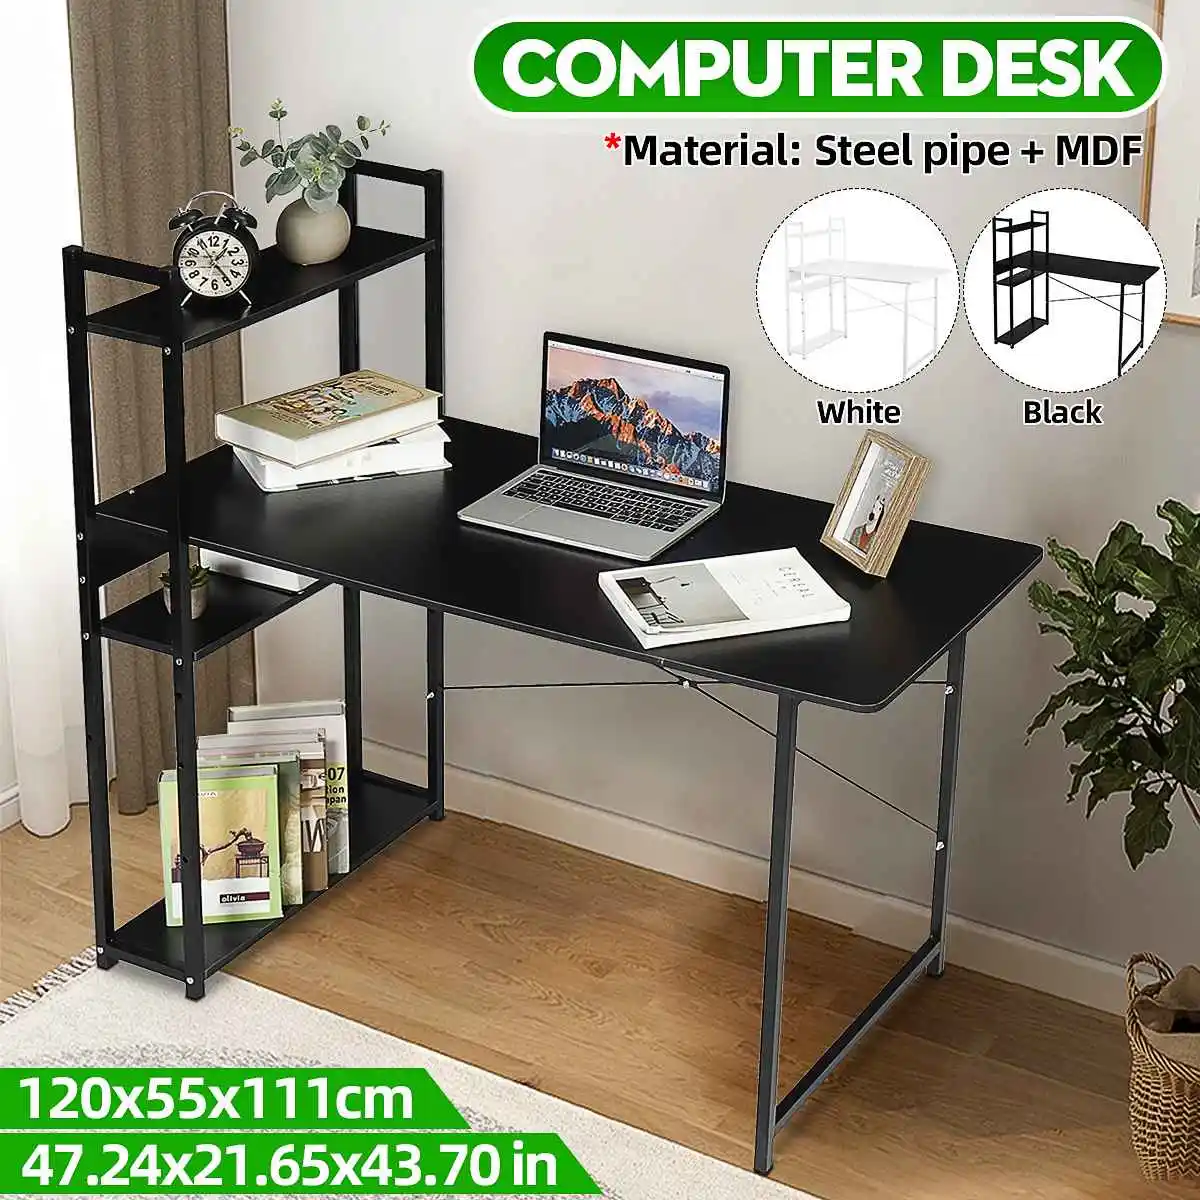 

Многоуровневый компьютерный стол для ПК, ноутбука, письменный стол, рабочий стол, игровой стол, книжная полка, мебель для дома и офиса